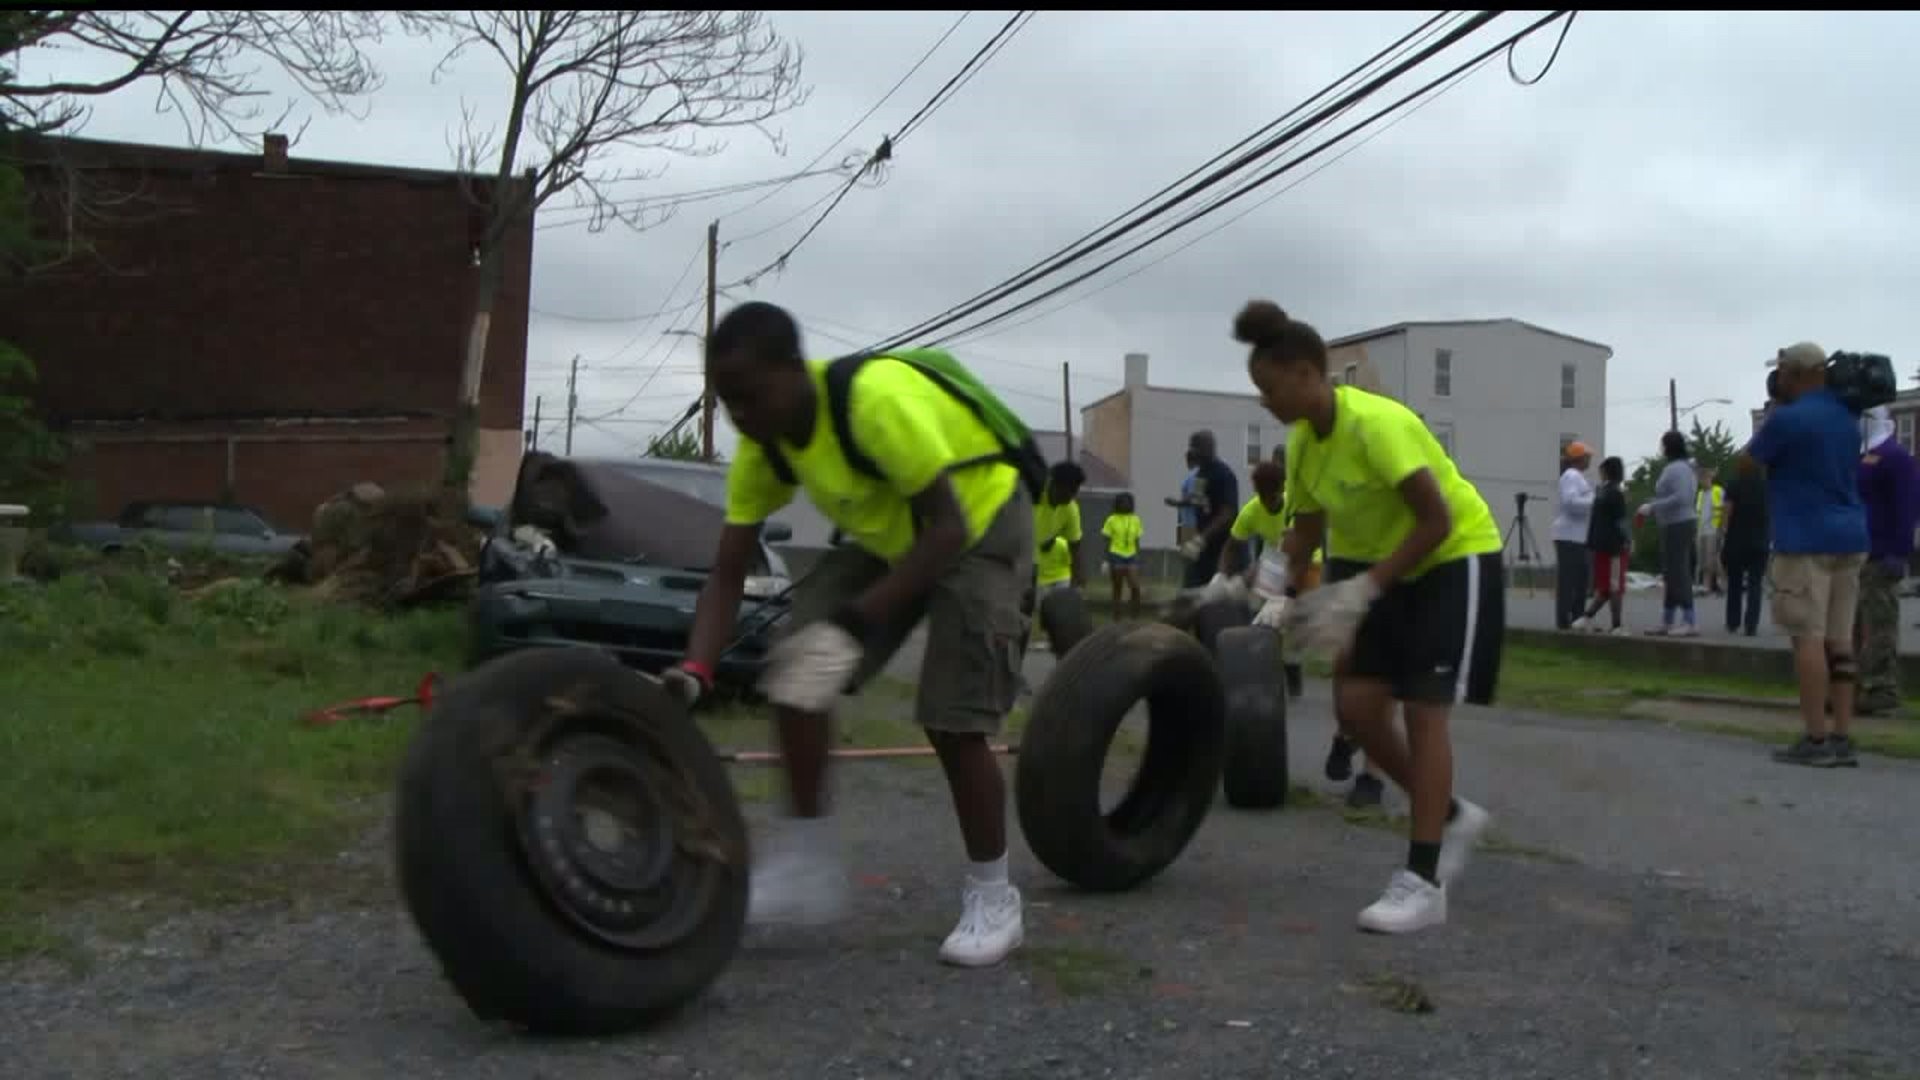 Rep. Kim joins volunteers to clean up trash in Harrisburg